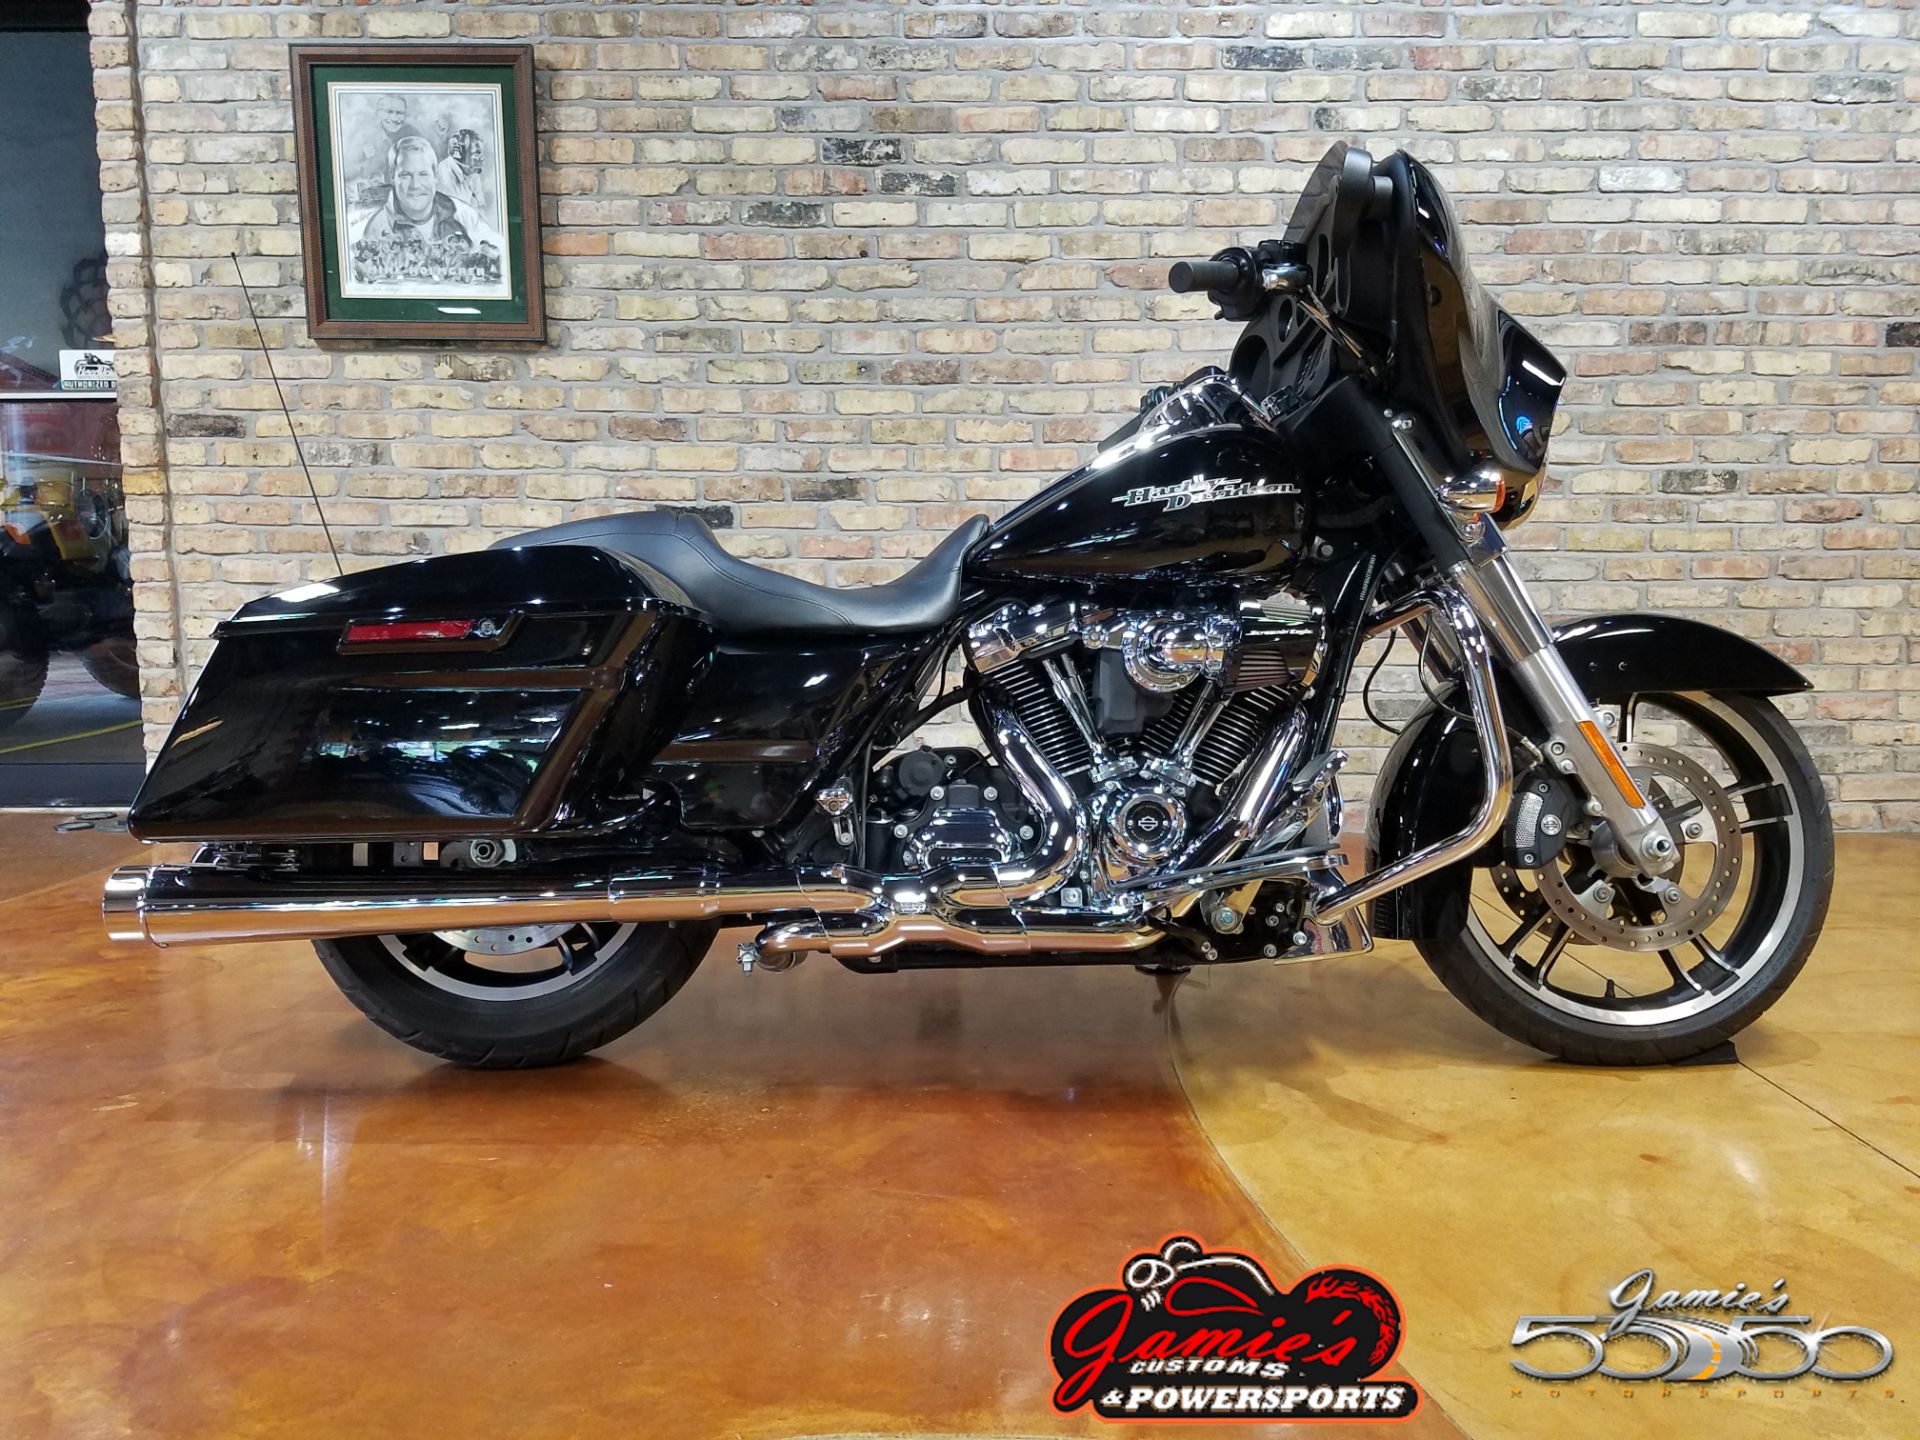 Used 2017 Harley Davidson Street Glide Motorcycles In Big Bend Wi 4430 Vivid Black